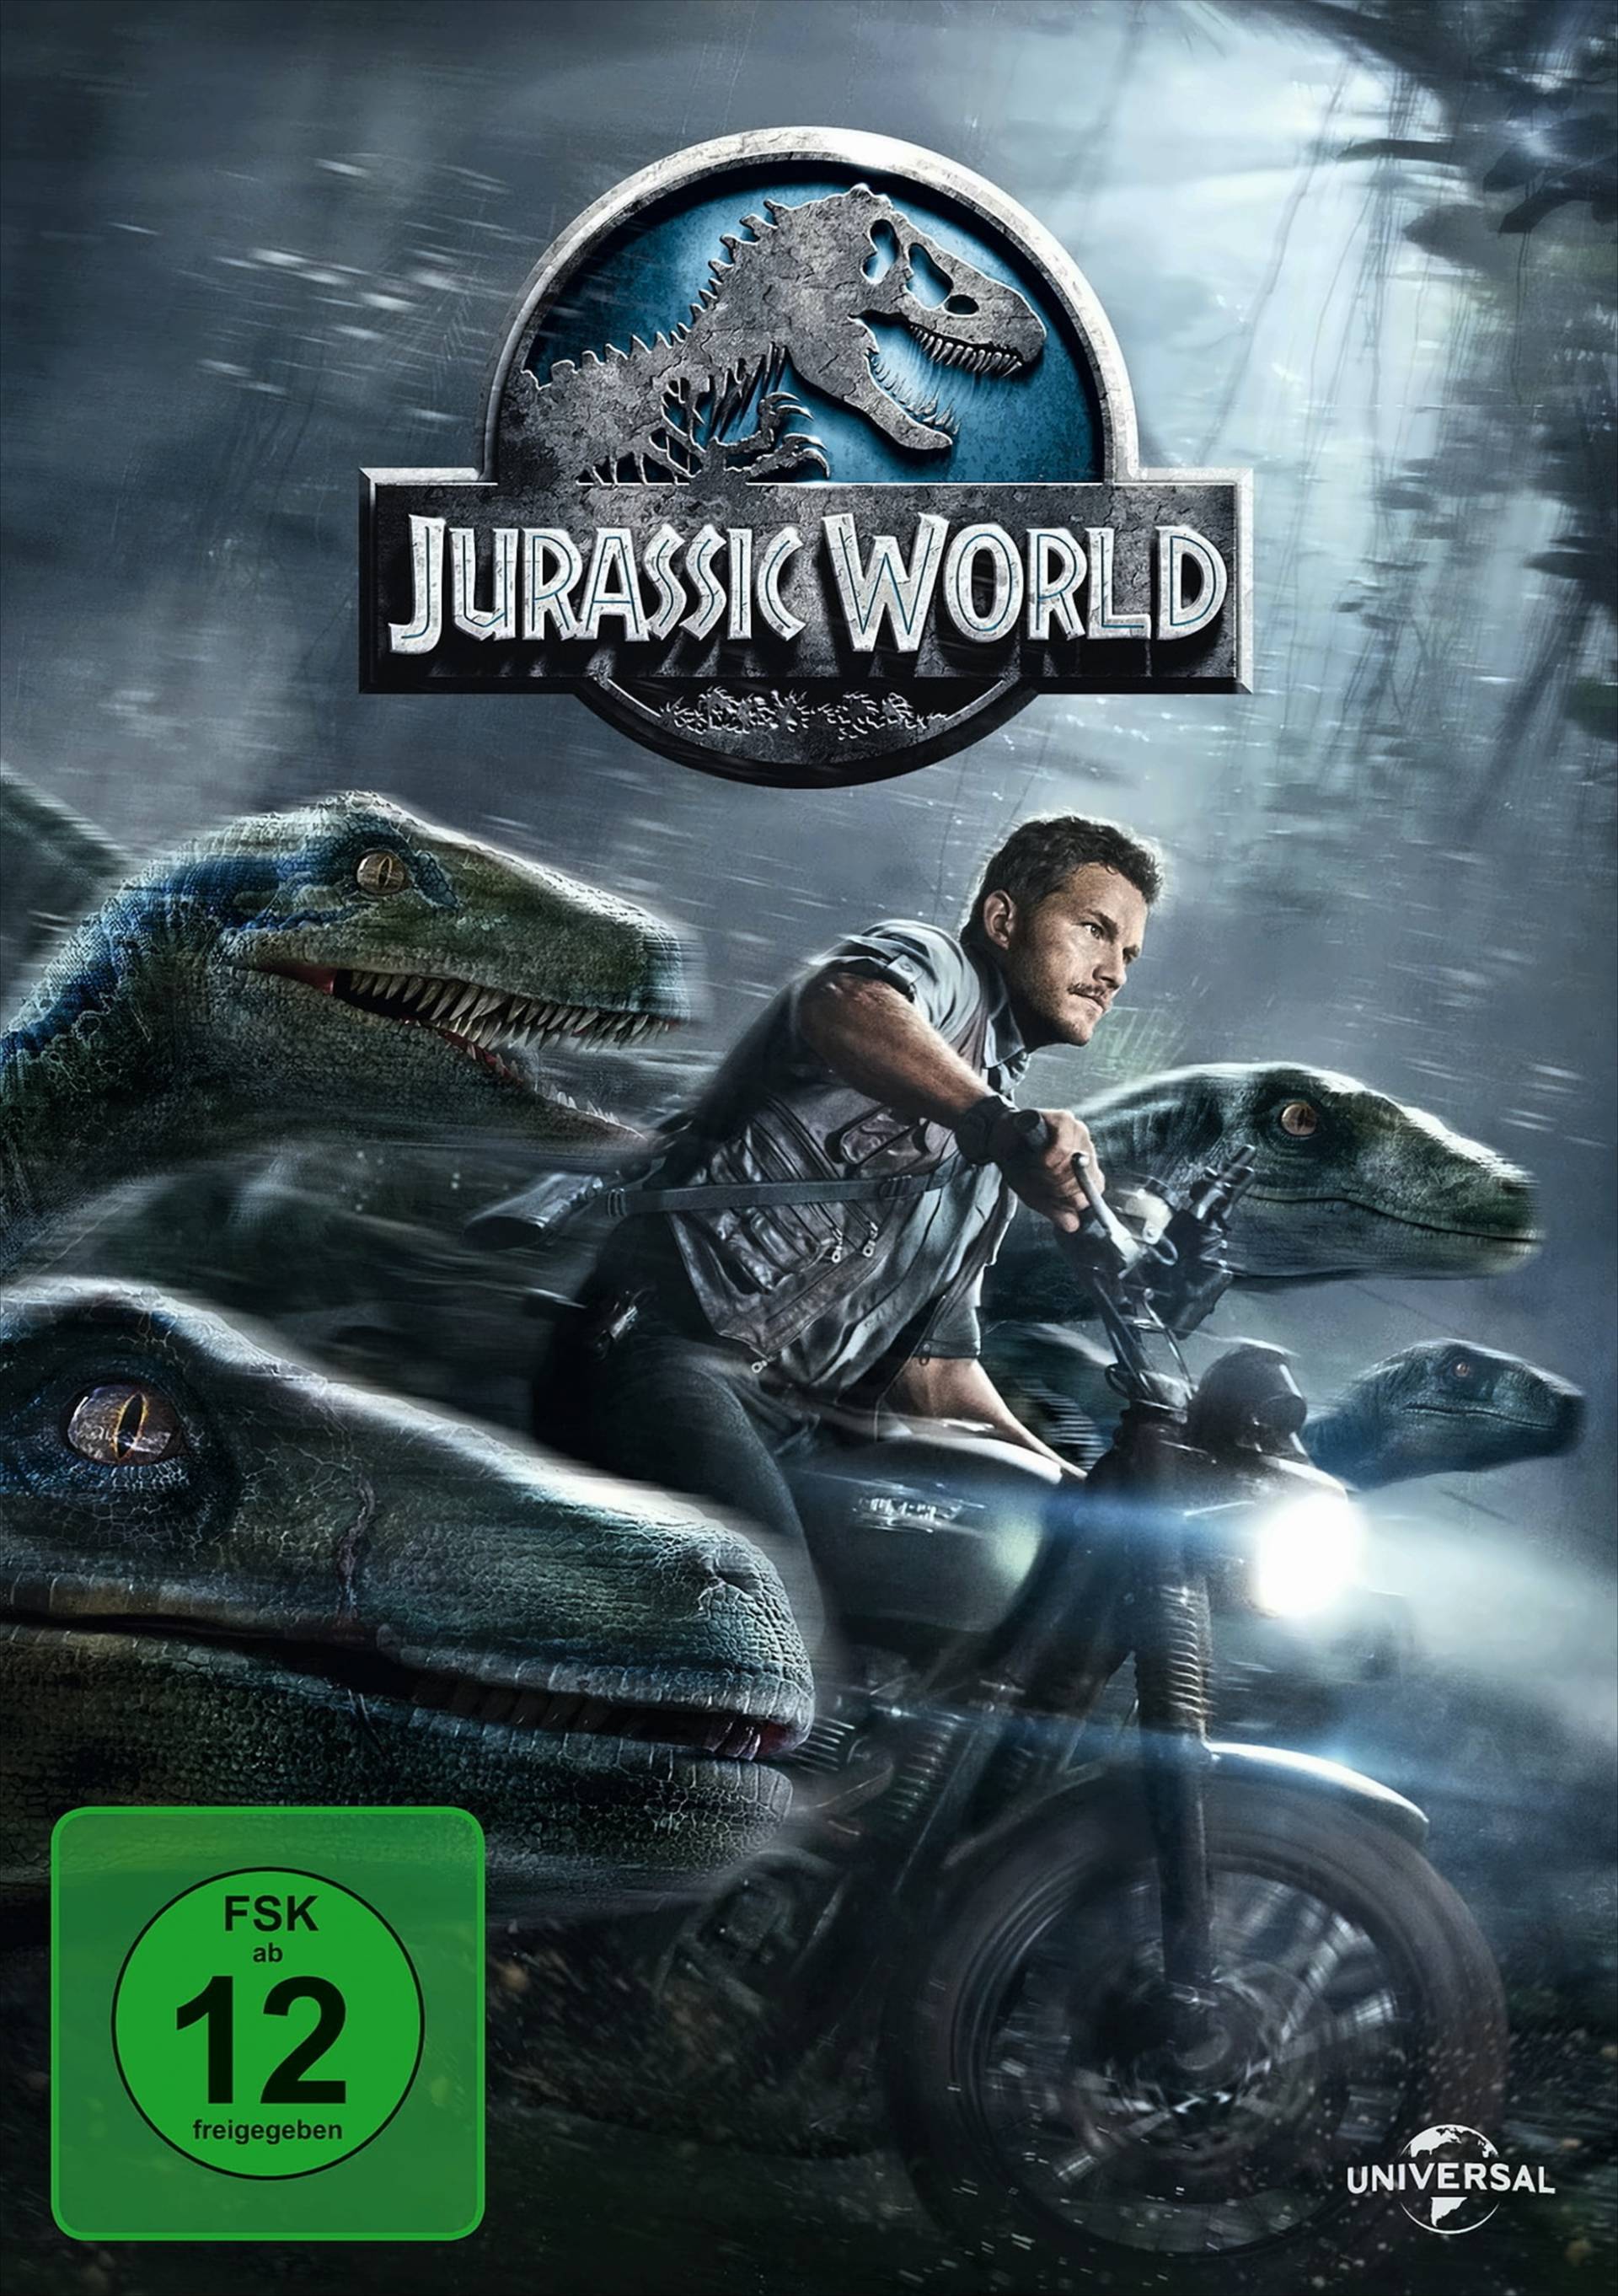 Jurassic World von Universal Pictures